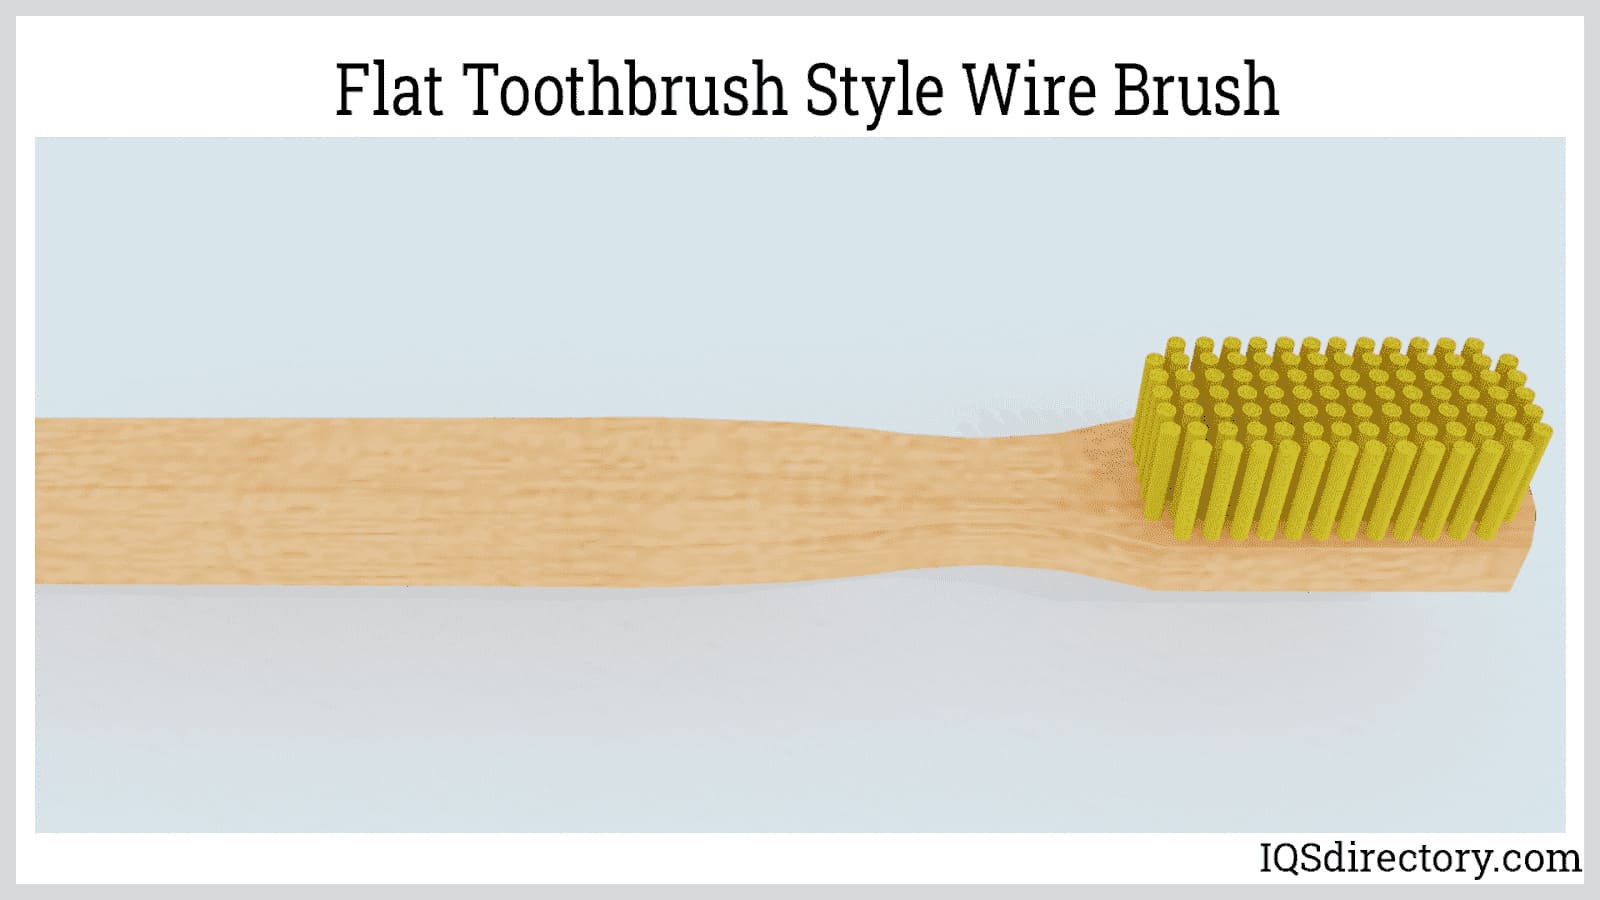 https://www.iqsdirectory.com/articles/brush/wire-brush/flat-toothbrush-style-wire-brush.jpg